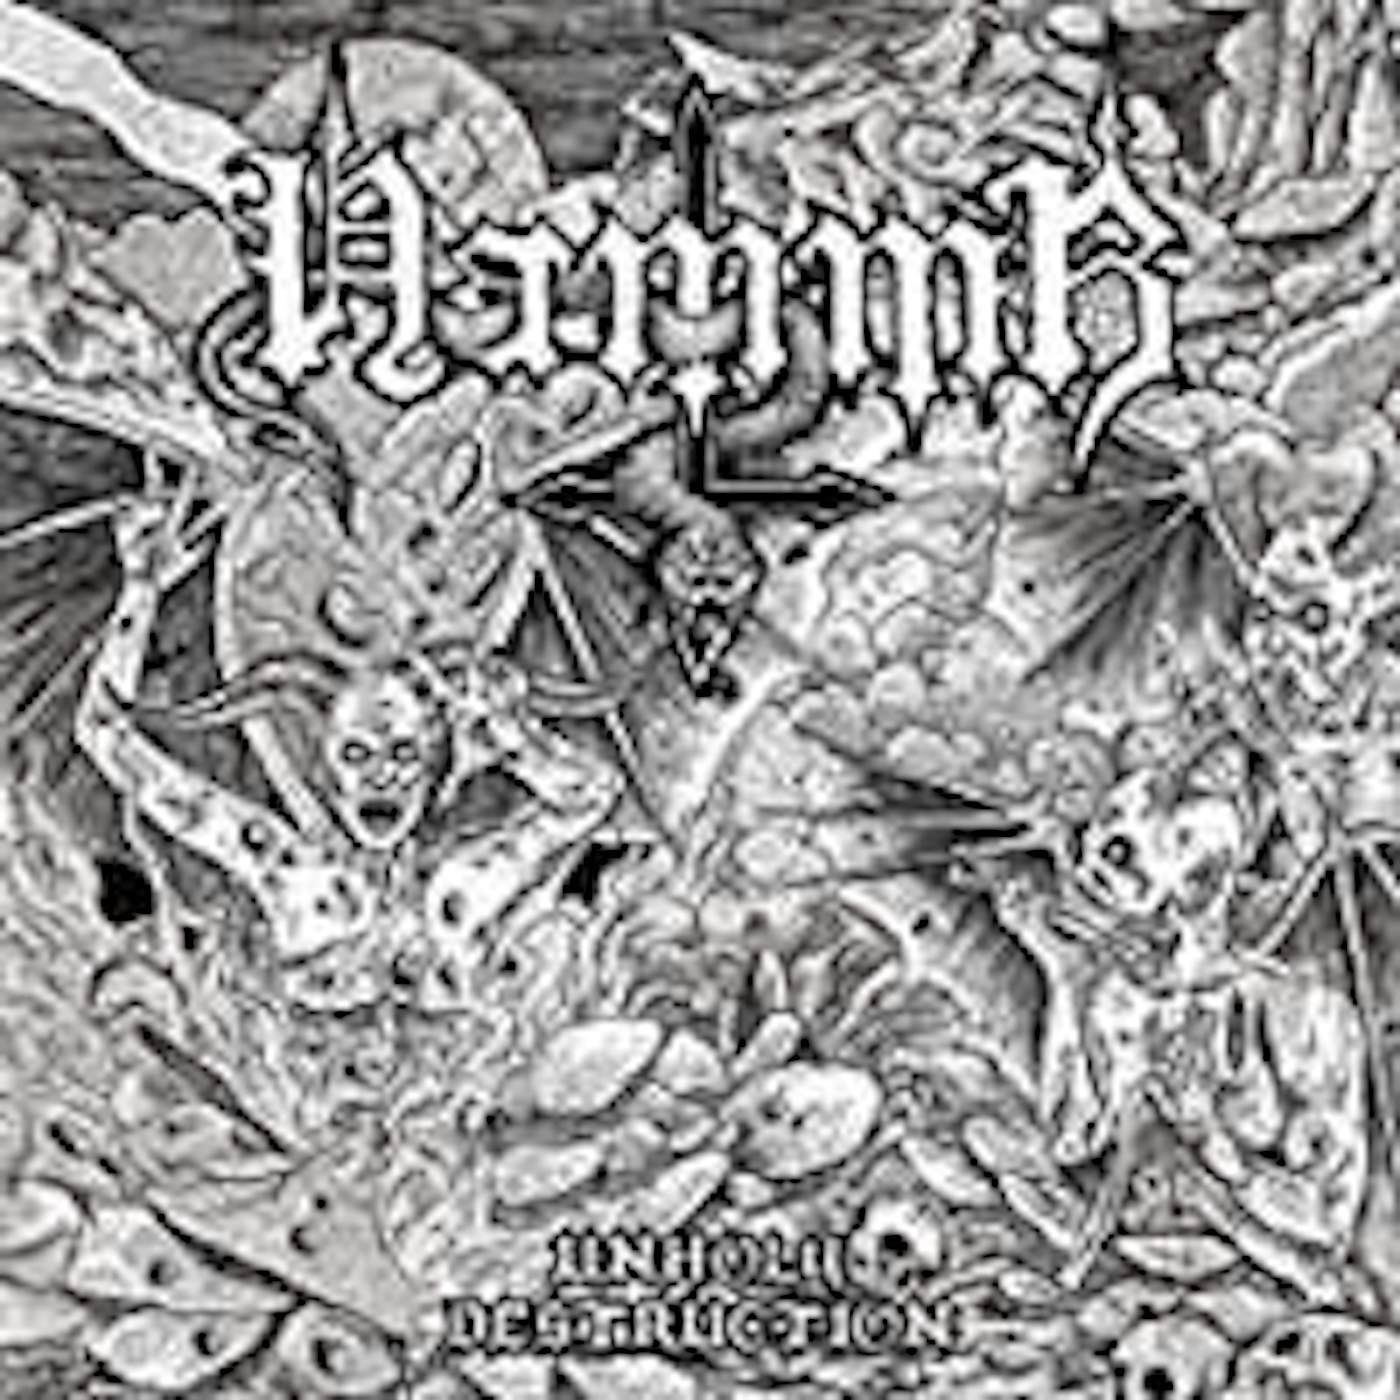 Hammr LP - Unholy Destruction (Vinyl)